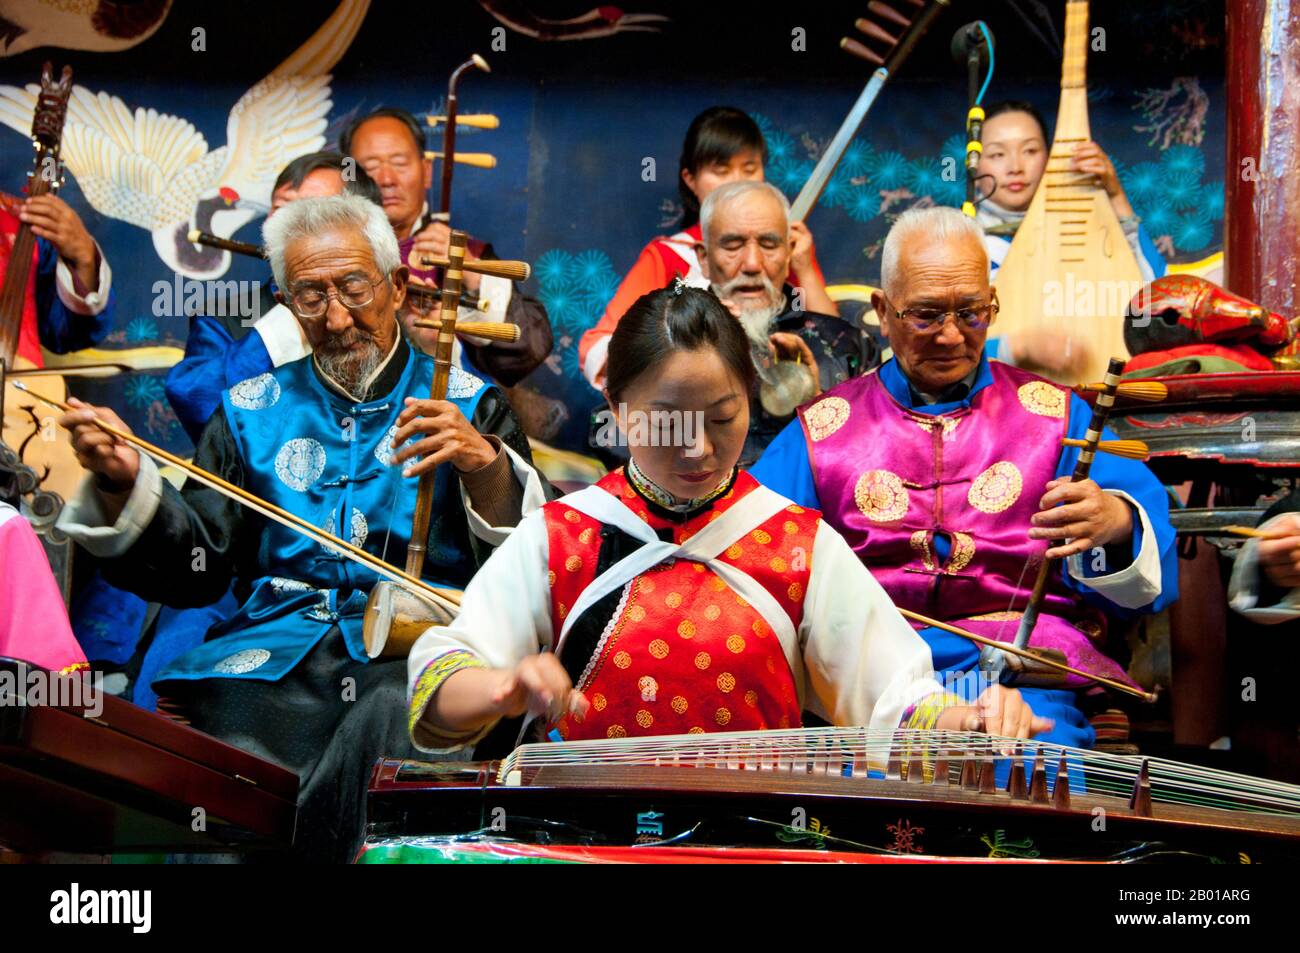 Chine : une femme plâte un guzheng, l'orchestre folklorique Naxi (Nakhi), la salle de l'orchestre Naxi, la vieille ville de Lijiang, province du Yunnan. La musique Naxi a 500 ans et, avec son mélange de paroles littéraires, de sujets poétiques et de styles musicaux des dynasties Tang, Song et Yuan, ainsi que de certaines influences tibétaines, elle a développé son propre style et ses propres traits uniques. Il existe trois styles principaux : Baisha, Dongjing et Huangjing, tous utilisant des instruments chinois traditionnels. Les Naxi ou Nakhi sont un groupe ethnique habitant les contreforts de l'Himalaya dans la partie nord-ouest de la province du Yunnan. Banque D'Images